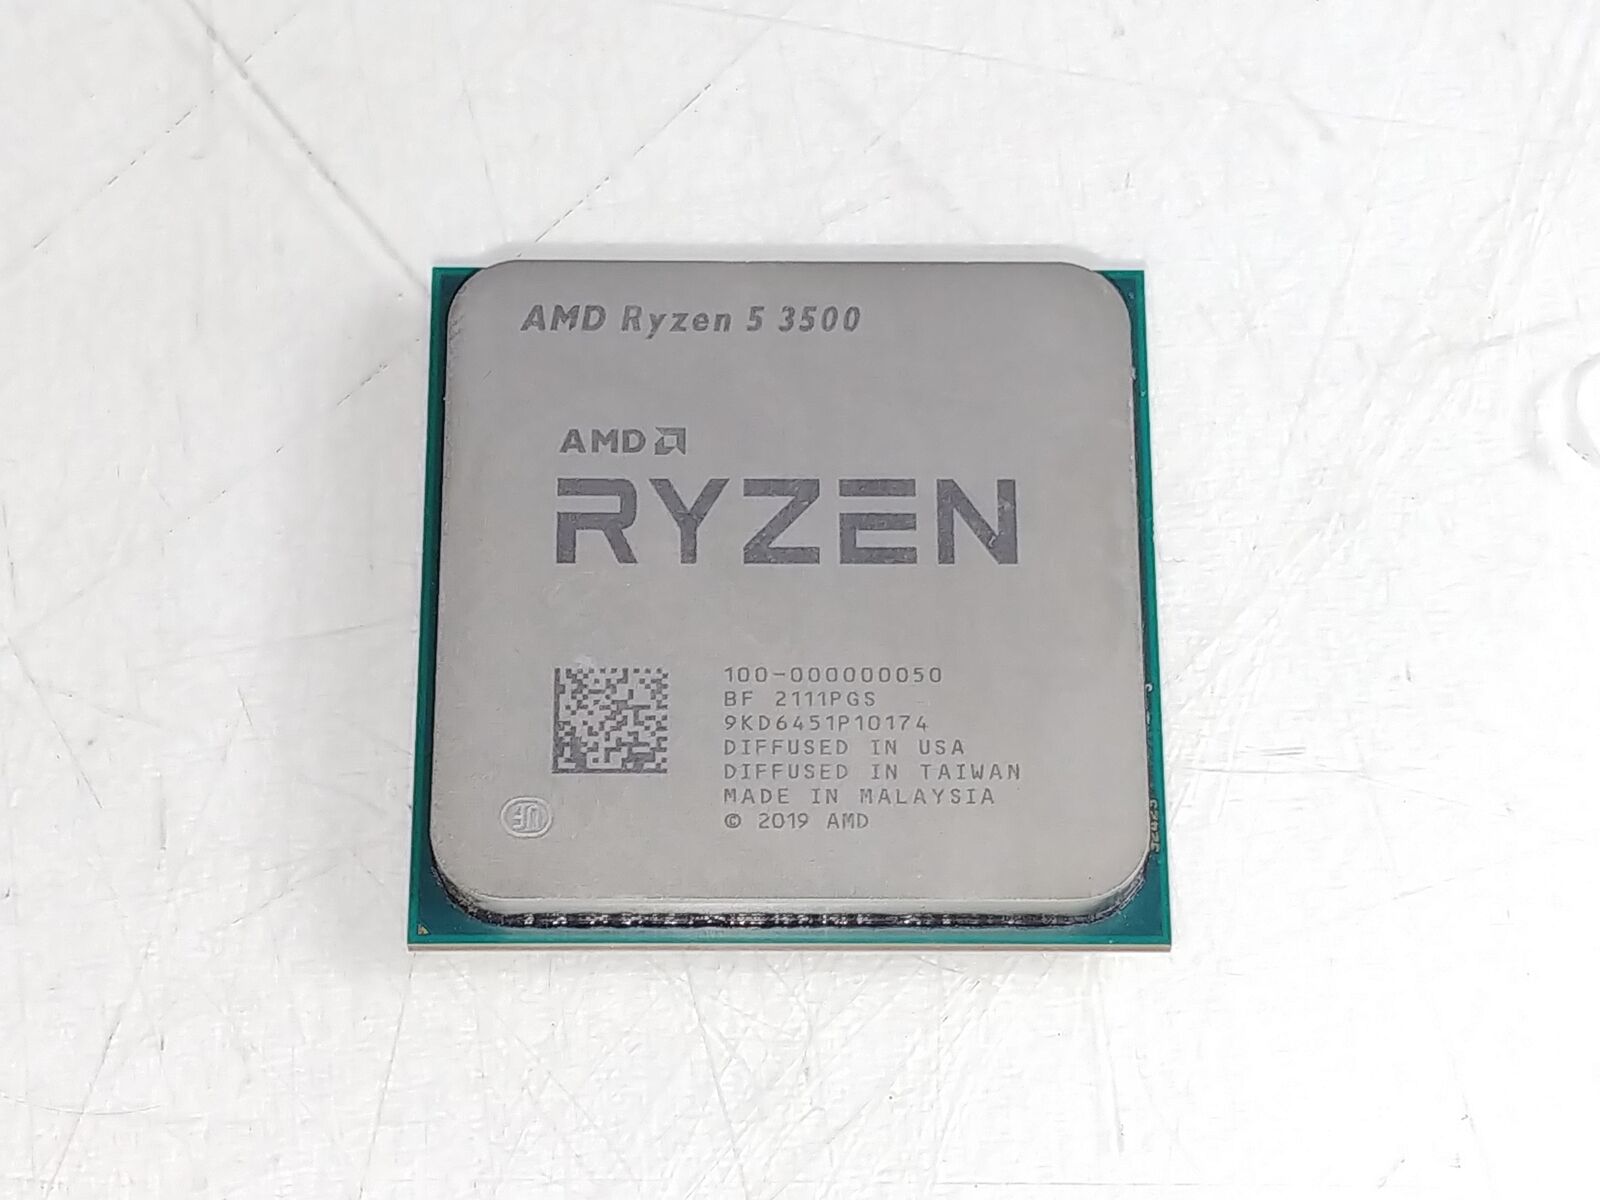 AMD Ryzen 5 3500 3.60 GHz Socket AM4 Desktop CPU Processor 100-000000050